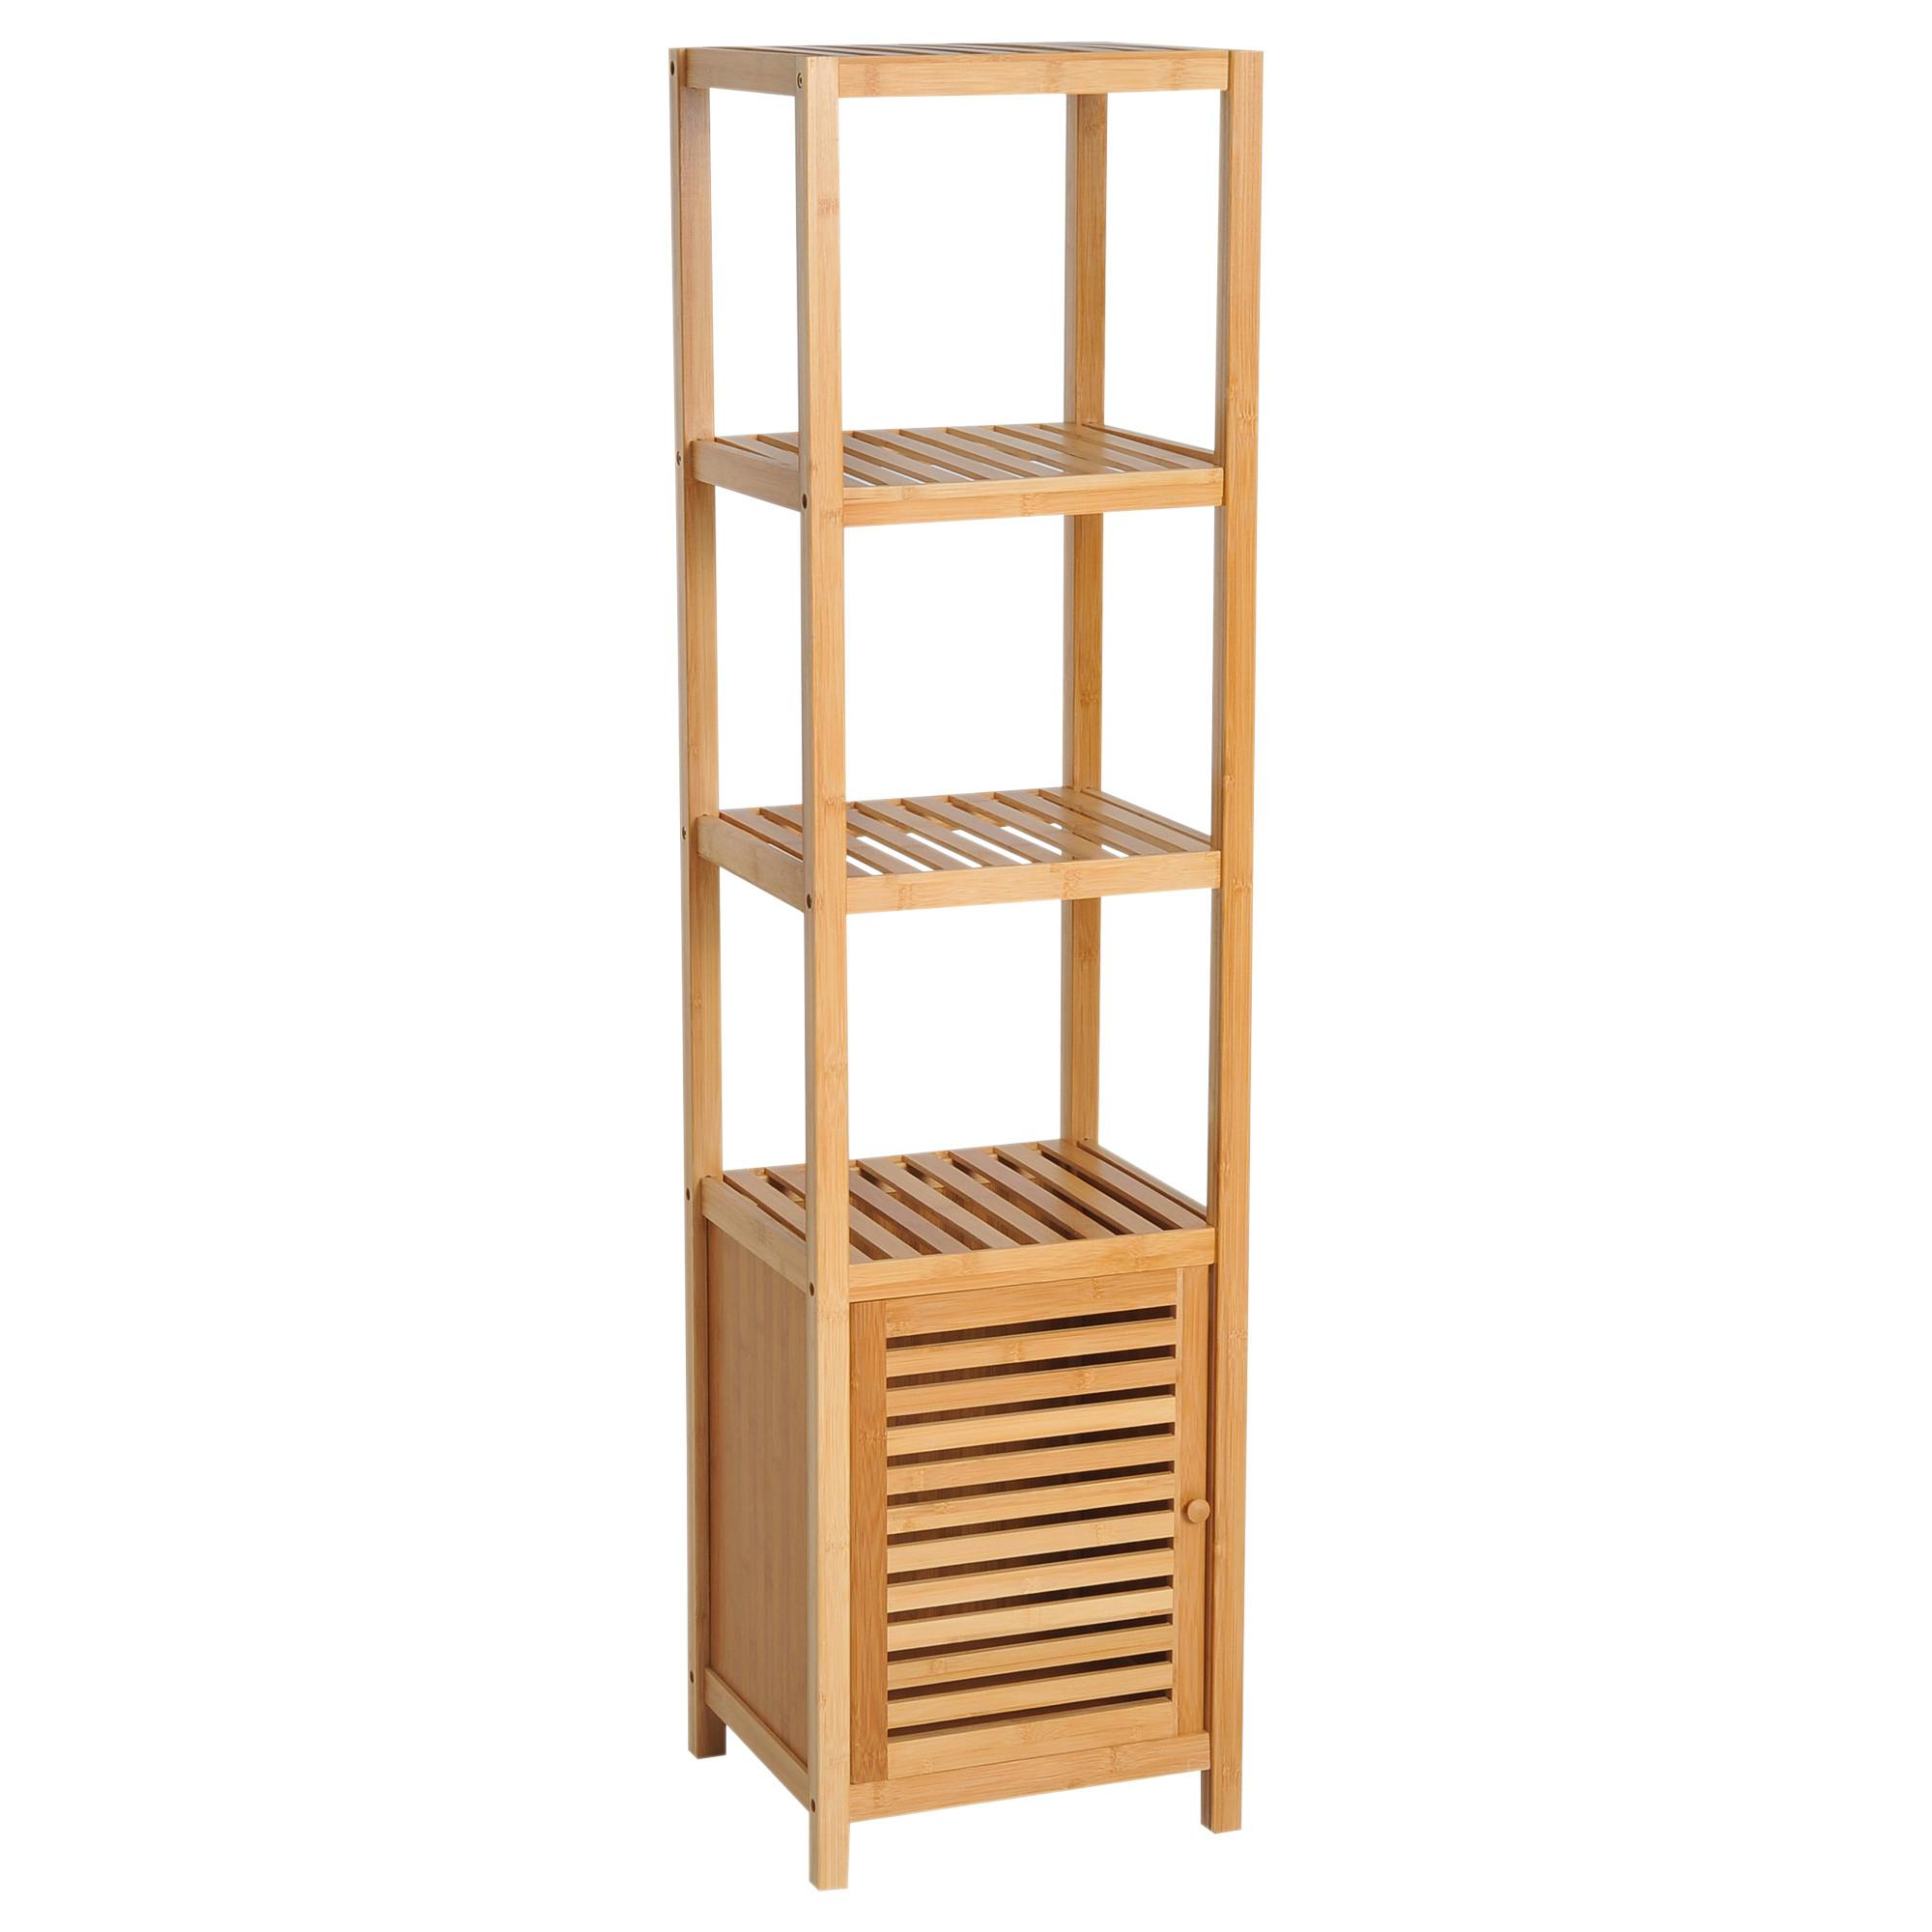 Estantería Escalera de Bambú de 4 Niveles Mueble de Almacenaje  Multifuncional para Baño Salón Cocina 35x36x138